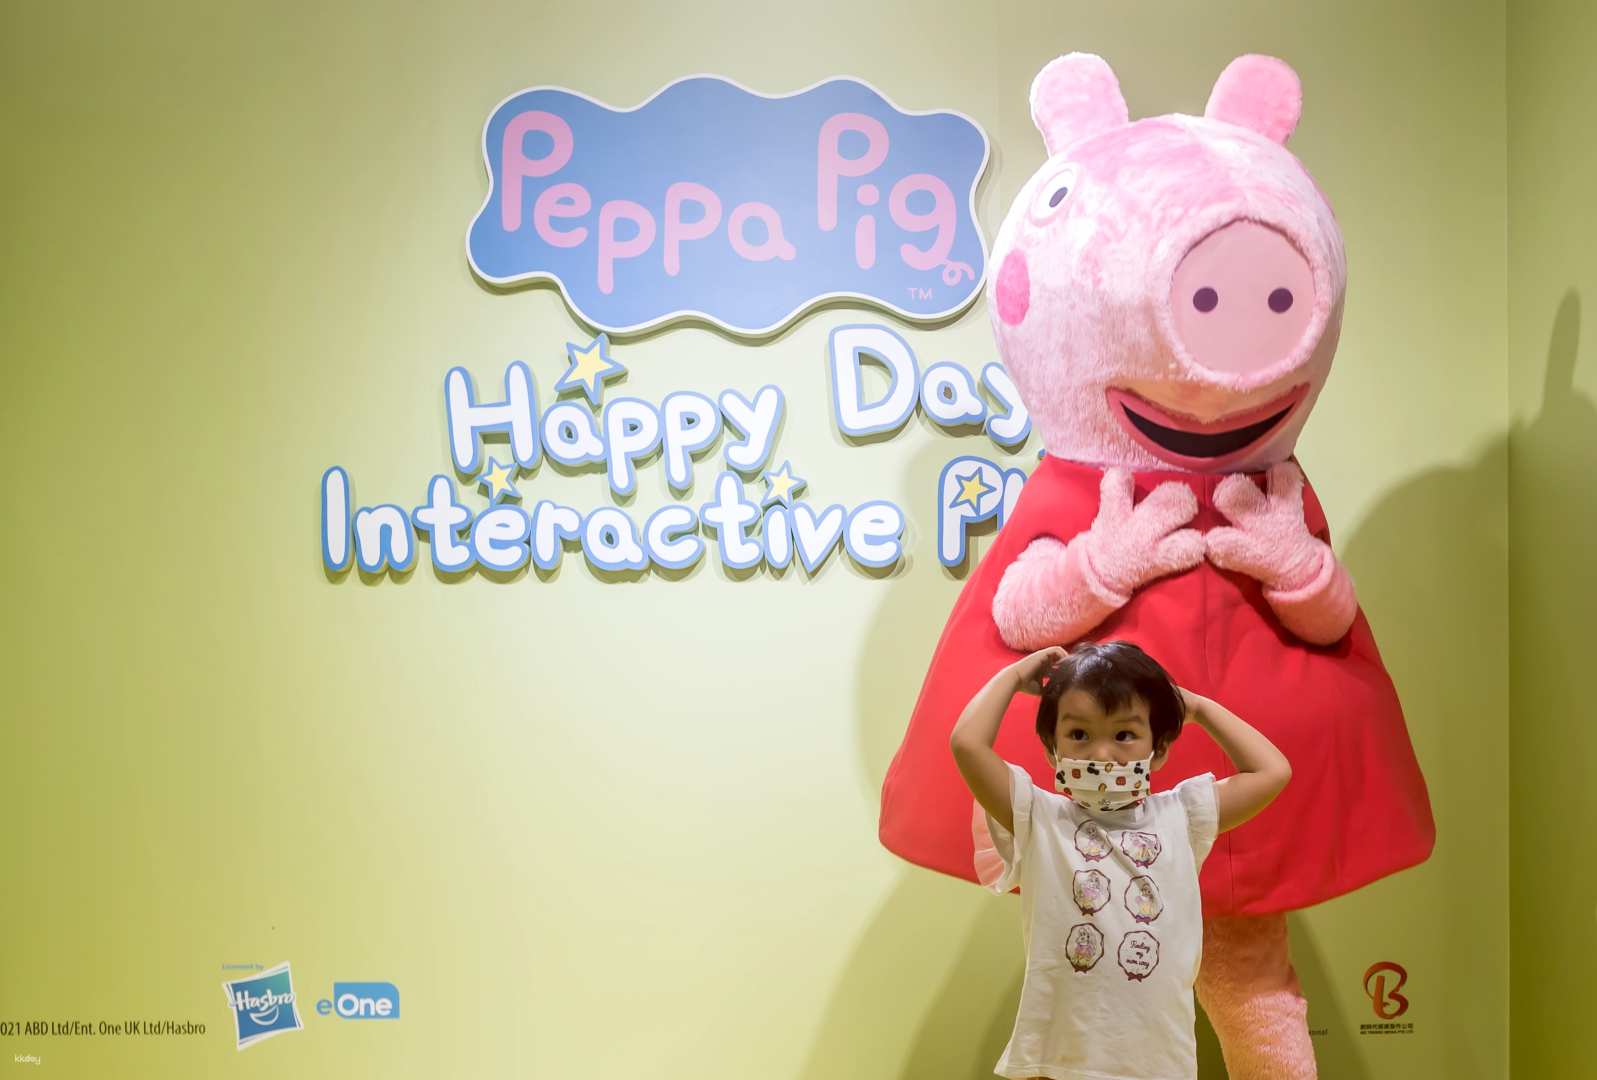 馬來西亞-吉隆坡佩佩豬室內主題樂園| 免費贈送小豬佩奇氣球